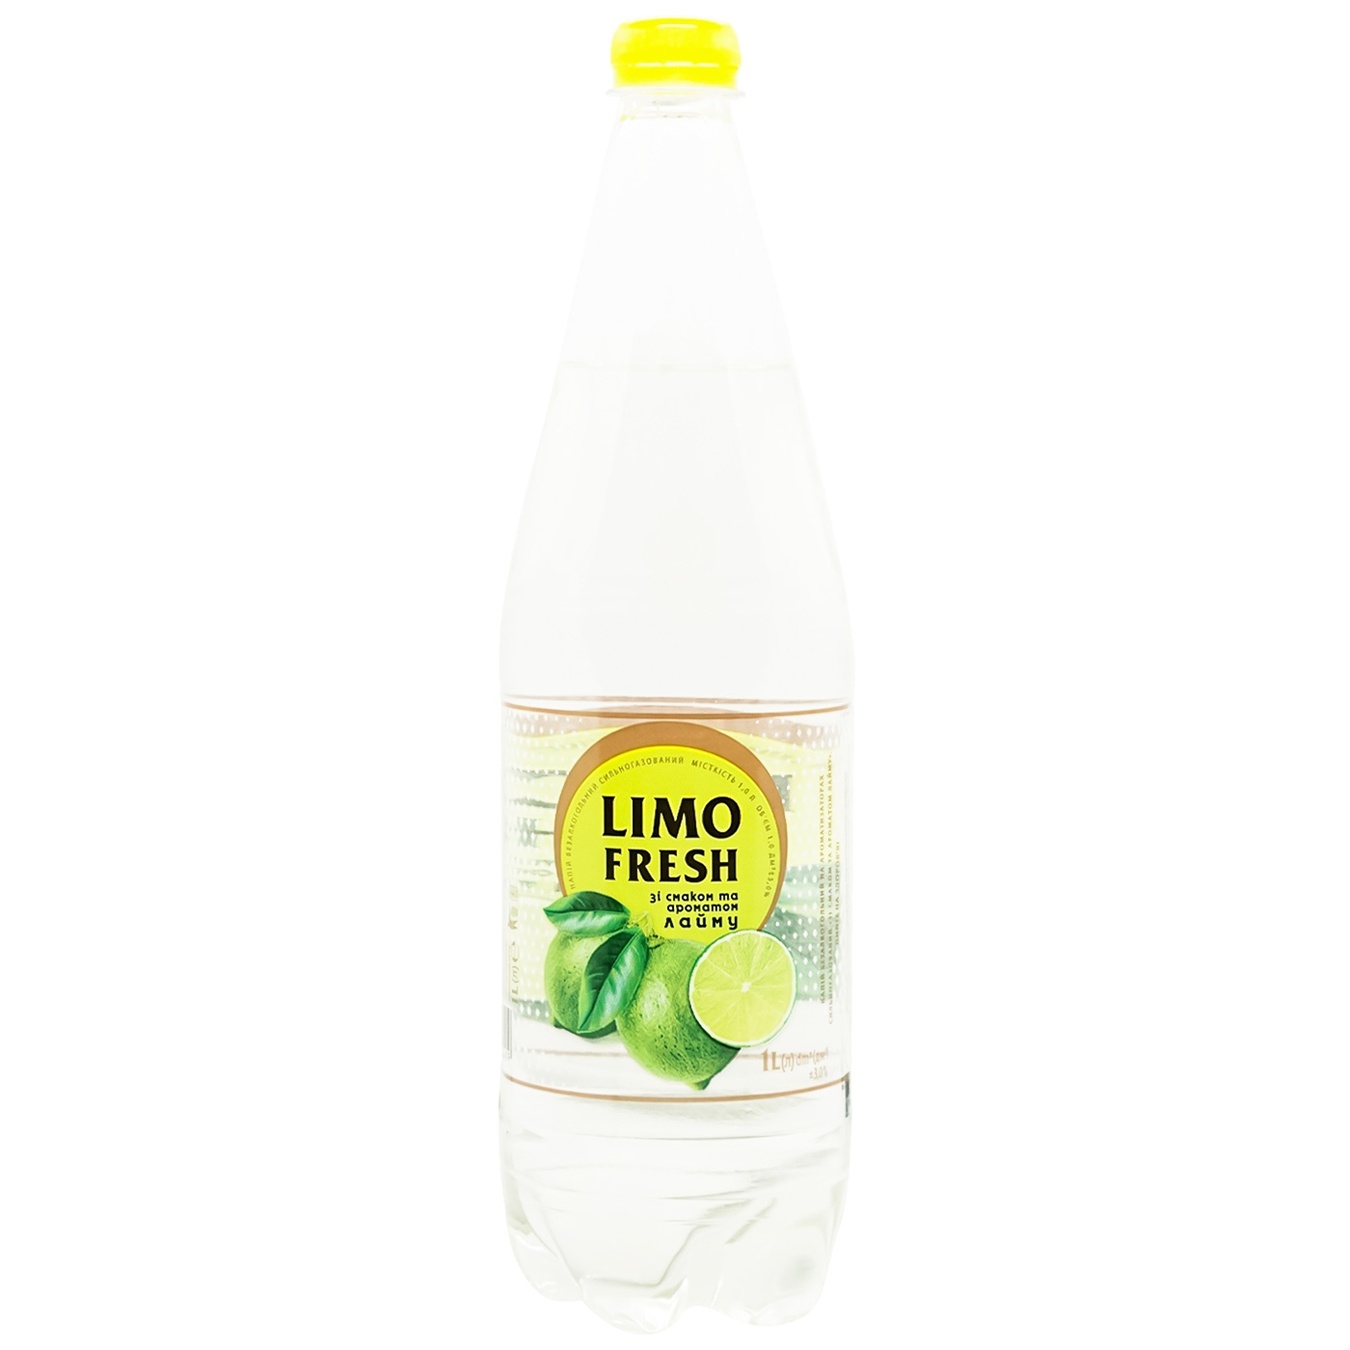 Carbonated drink Limofresh lime 1 liter.